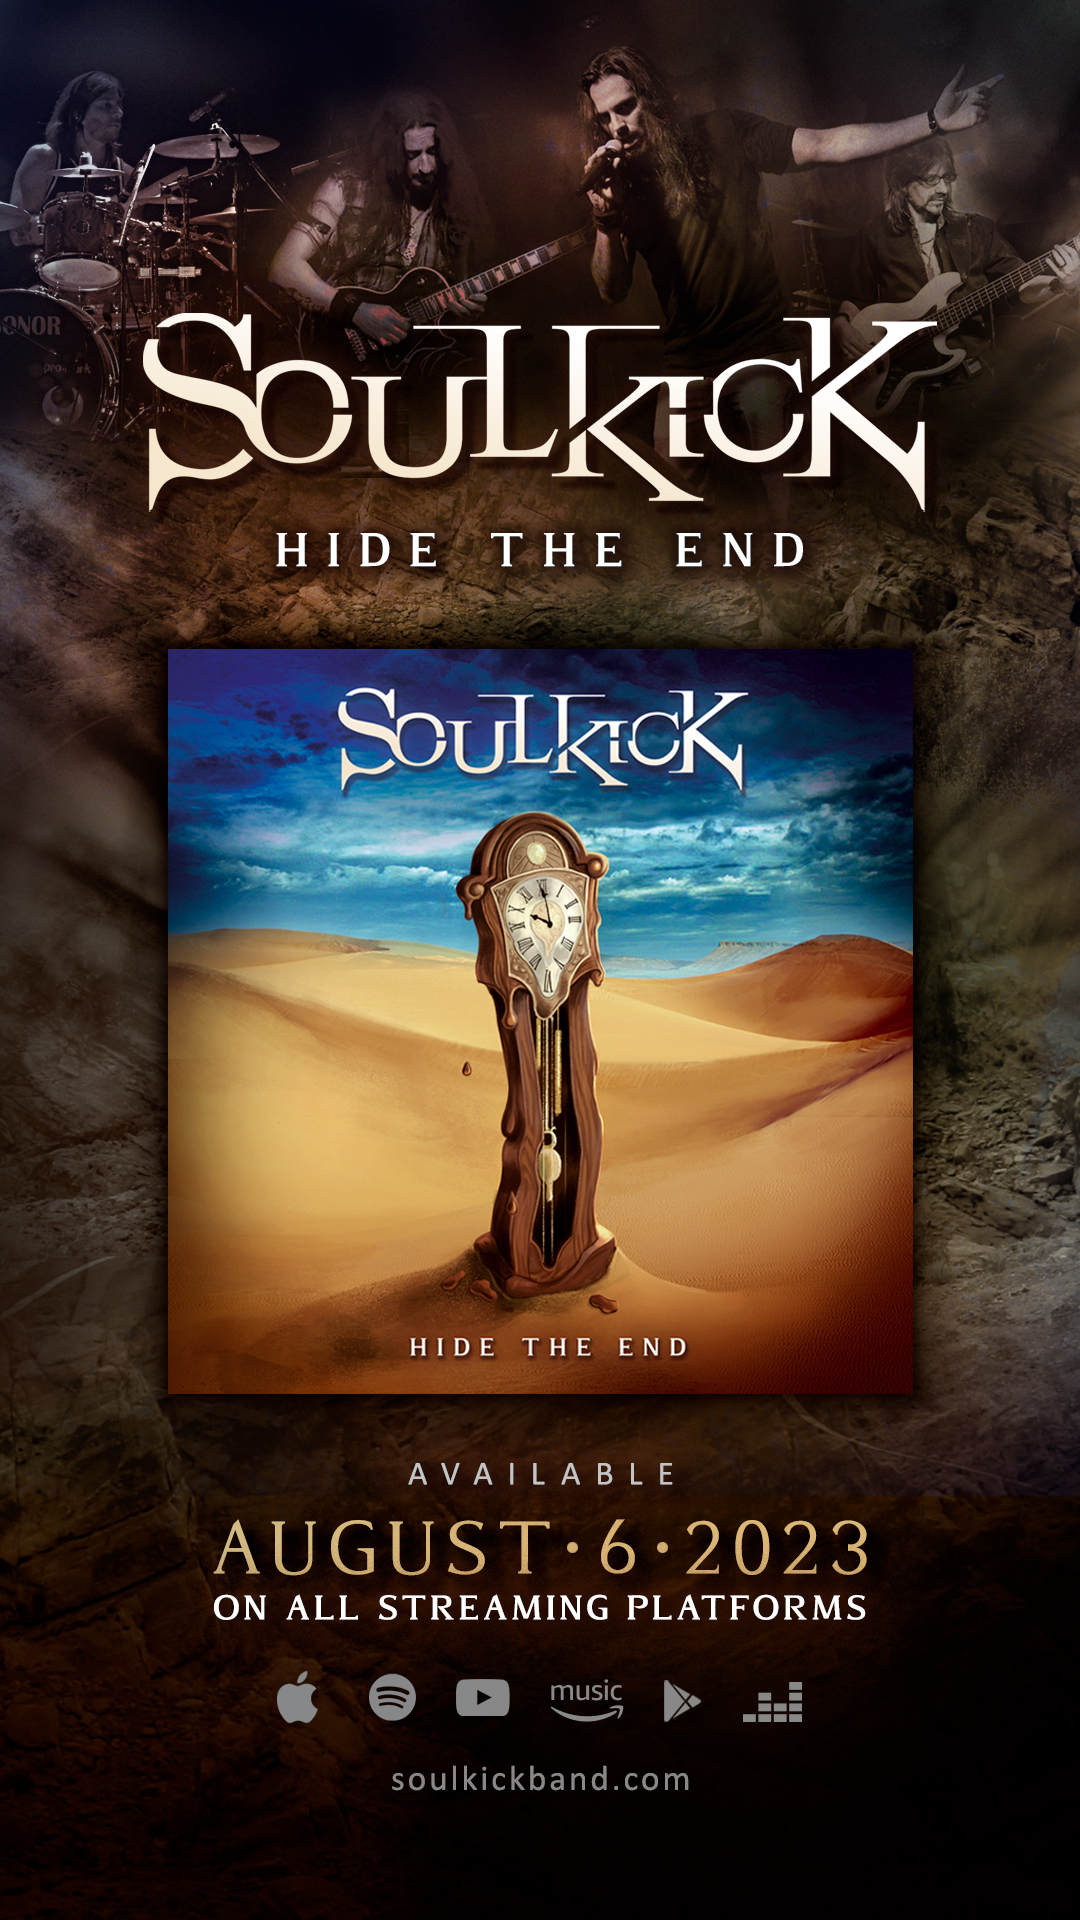 SOULKICK – info on new album